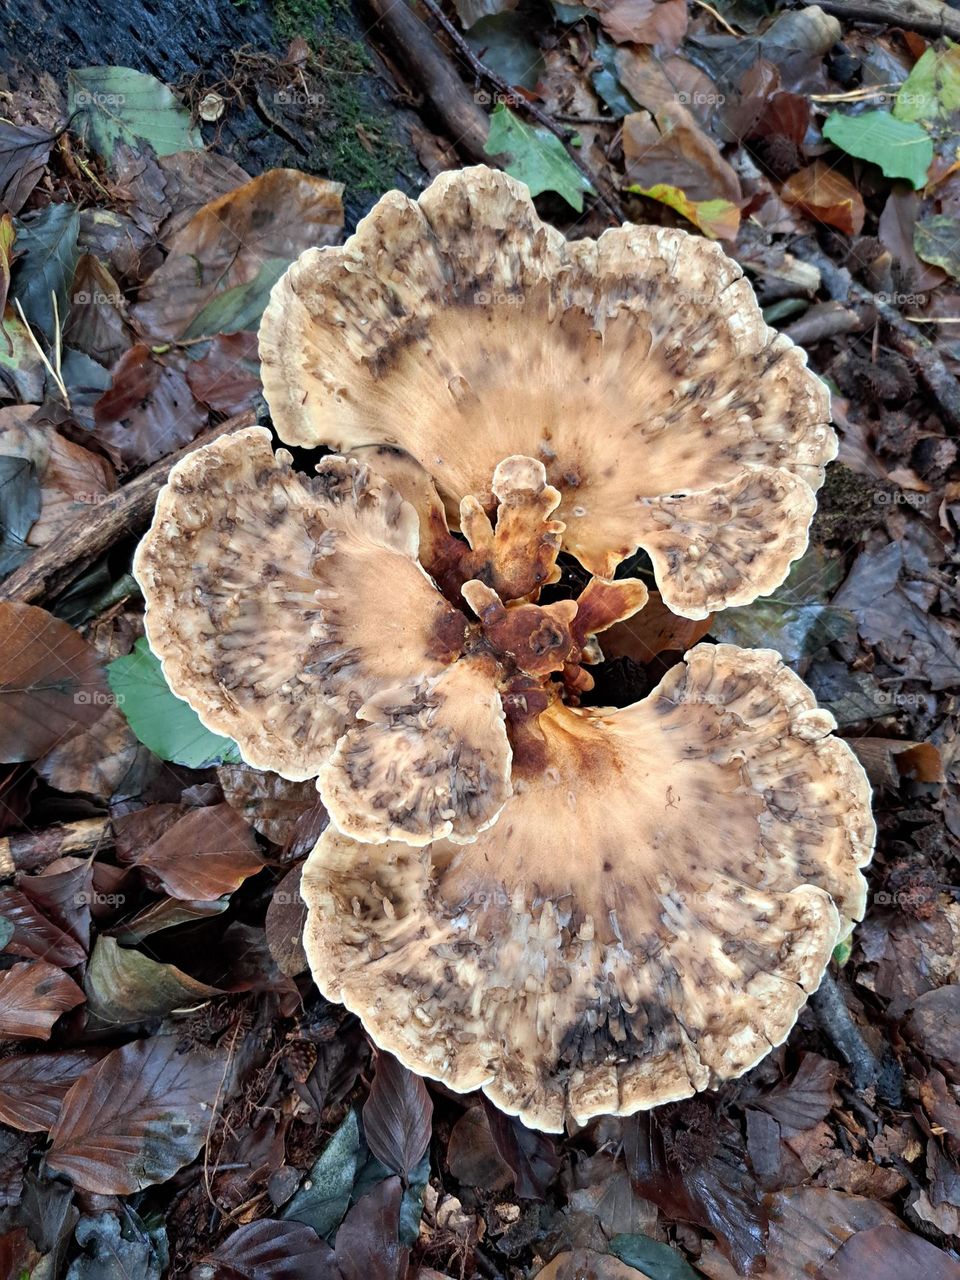 Mushroom delight